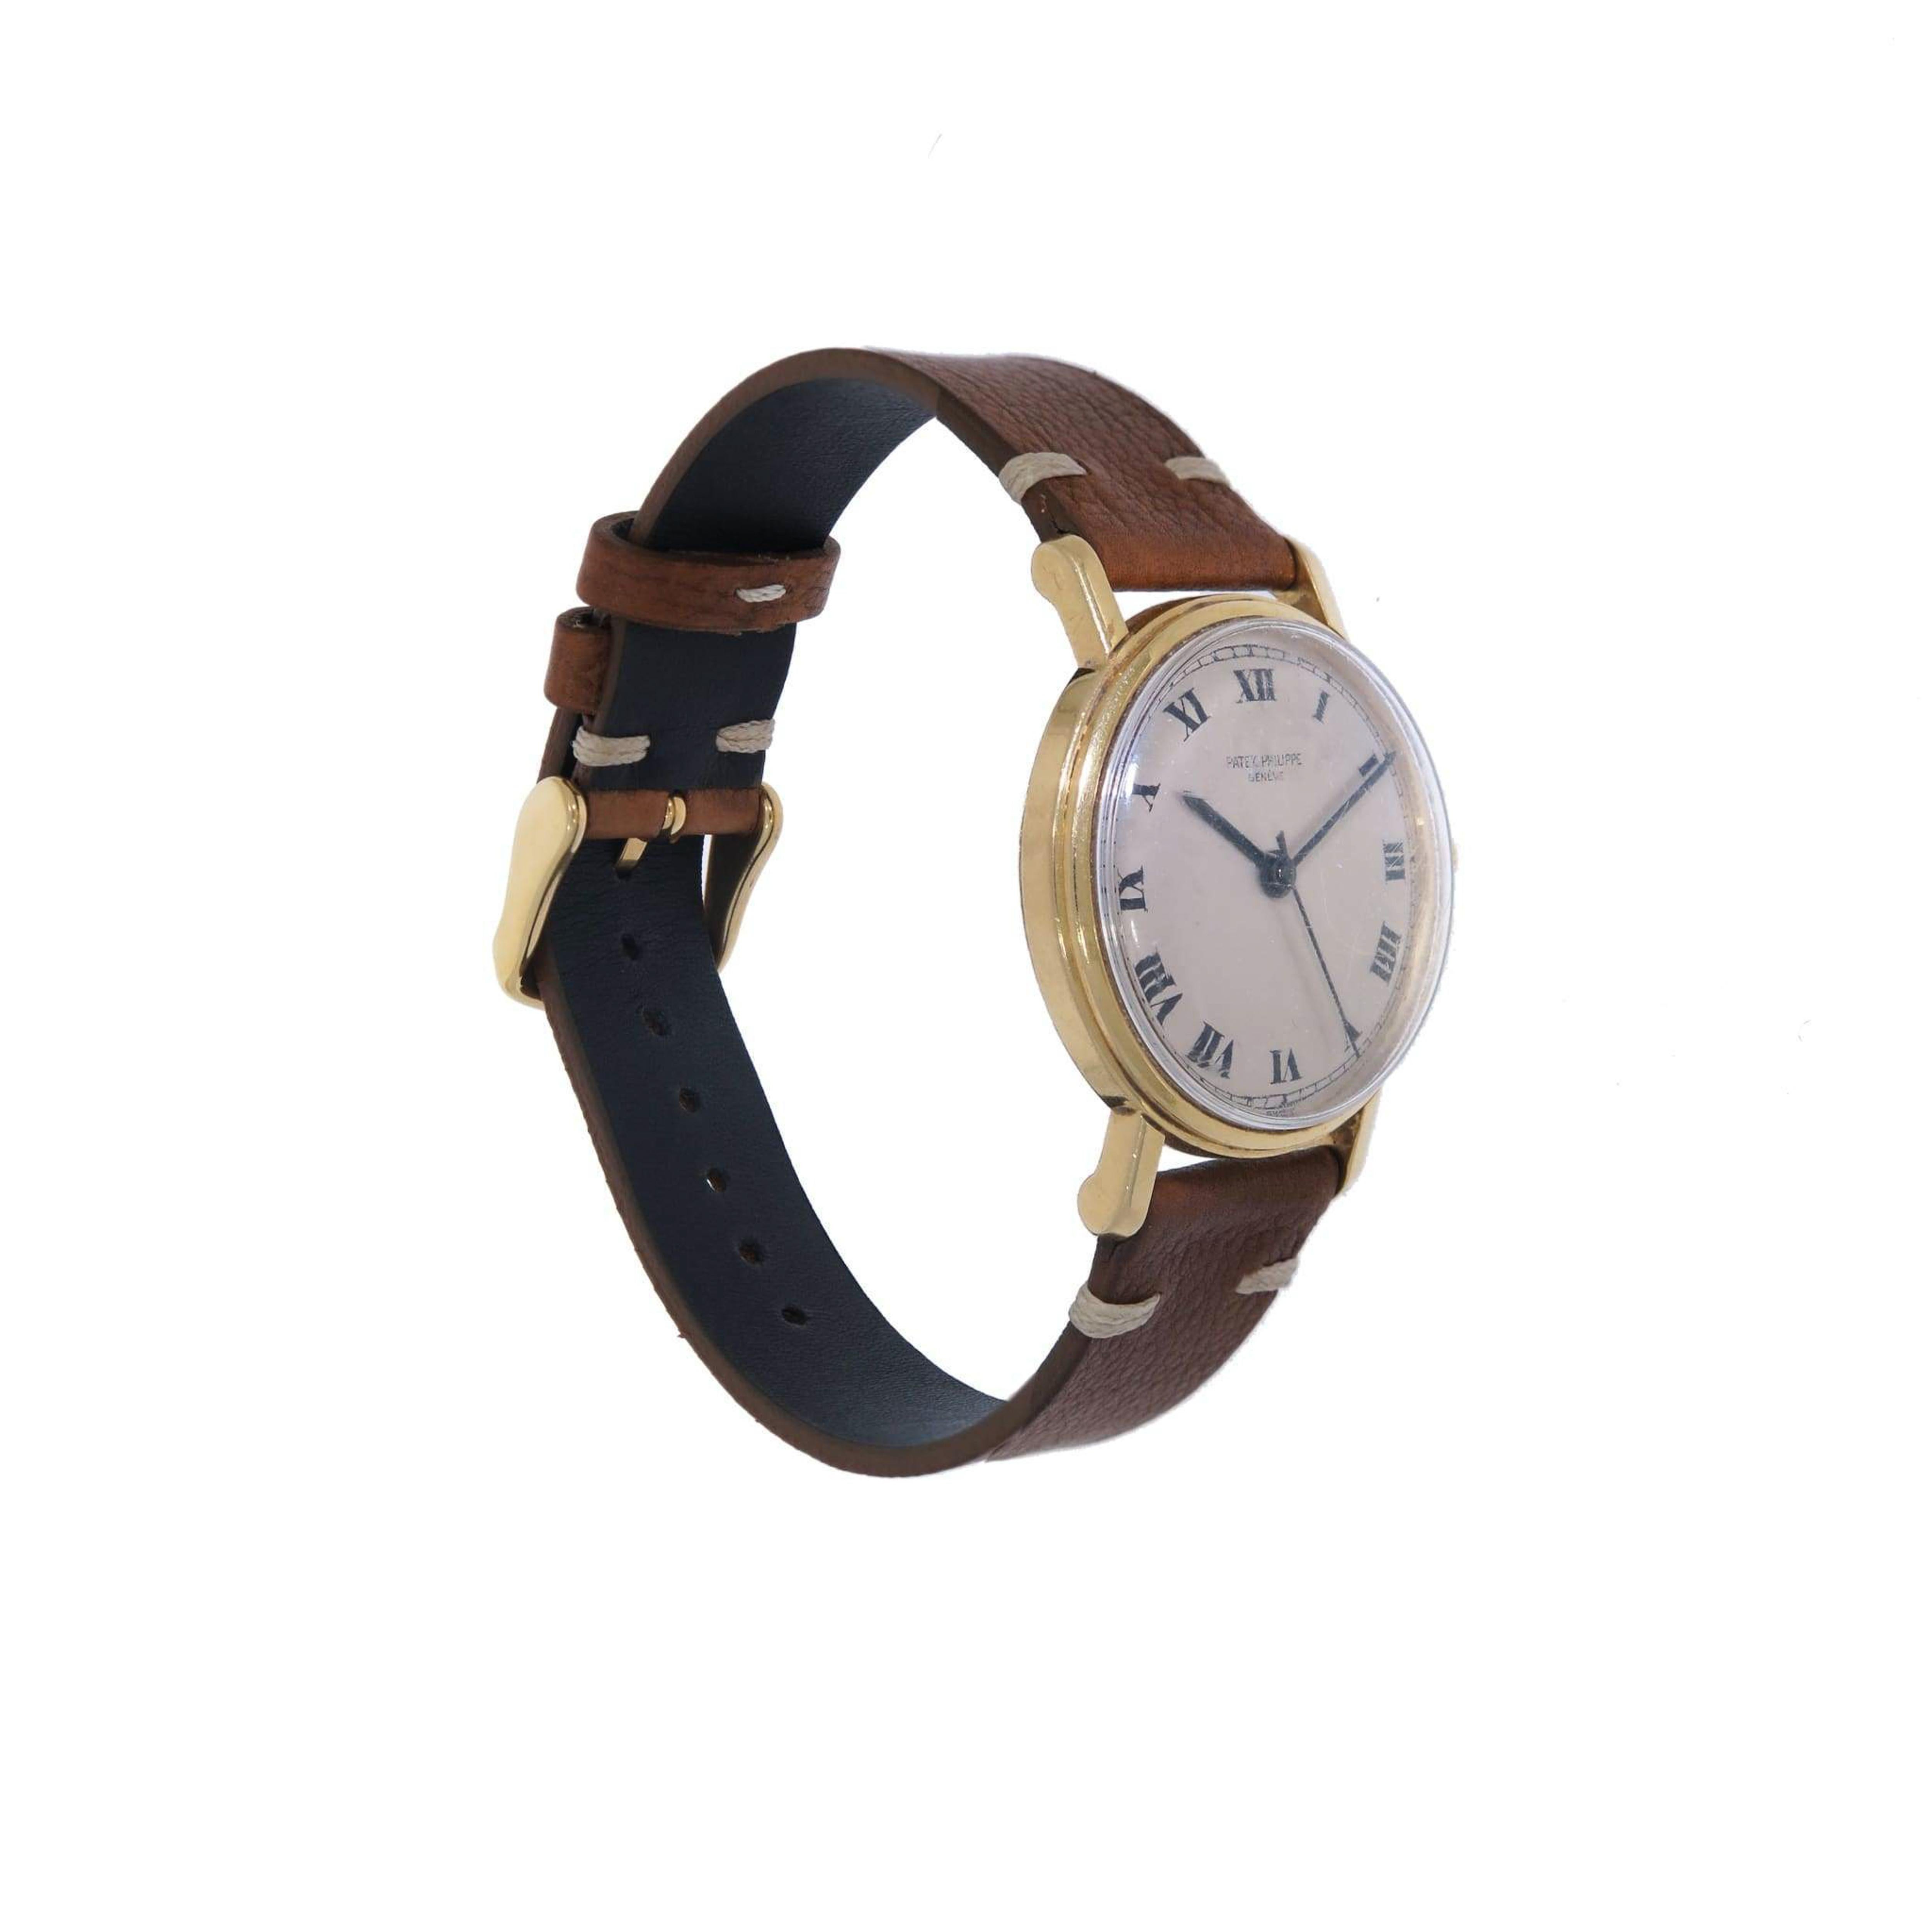 Dieser Zeitmesser verfügt über ein Uhrwerk mit Handaufzug (18 Jewels) und Anzeigen für Stunden, Minuten und Zentralsekunde. Das Gehäuse misst 34 mm im Durchmesser und hat eine Gesamtdicke von 11 mm, einschließlich des gewölbten Acrylglases. Die Uhr